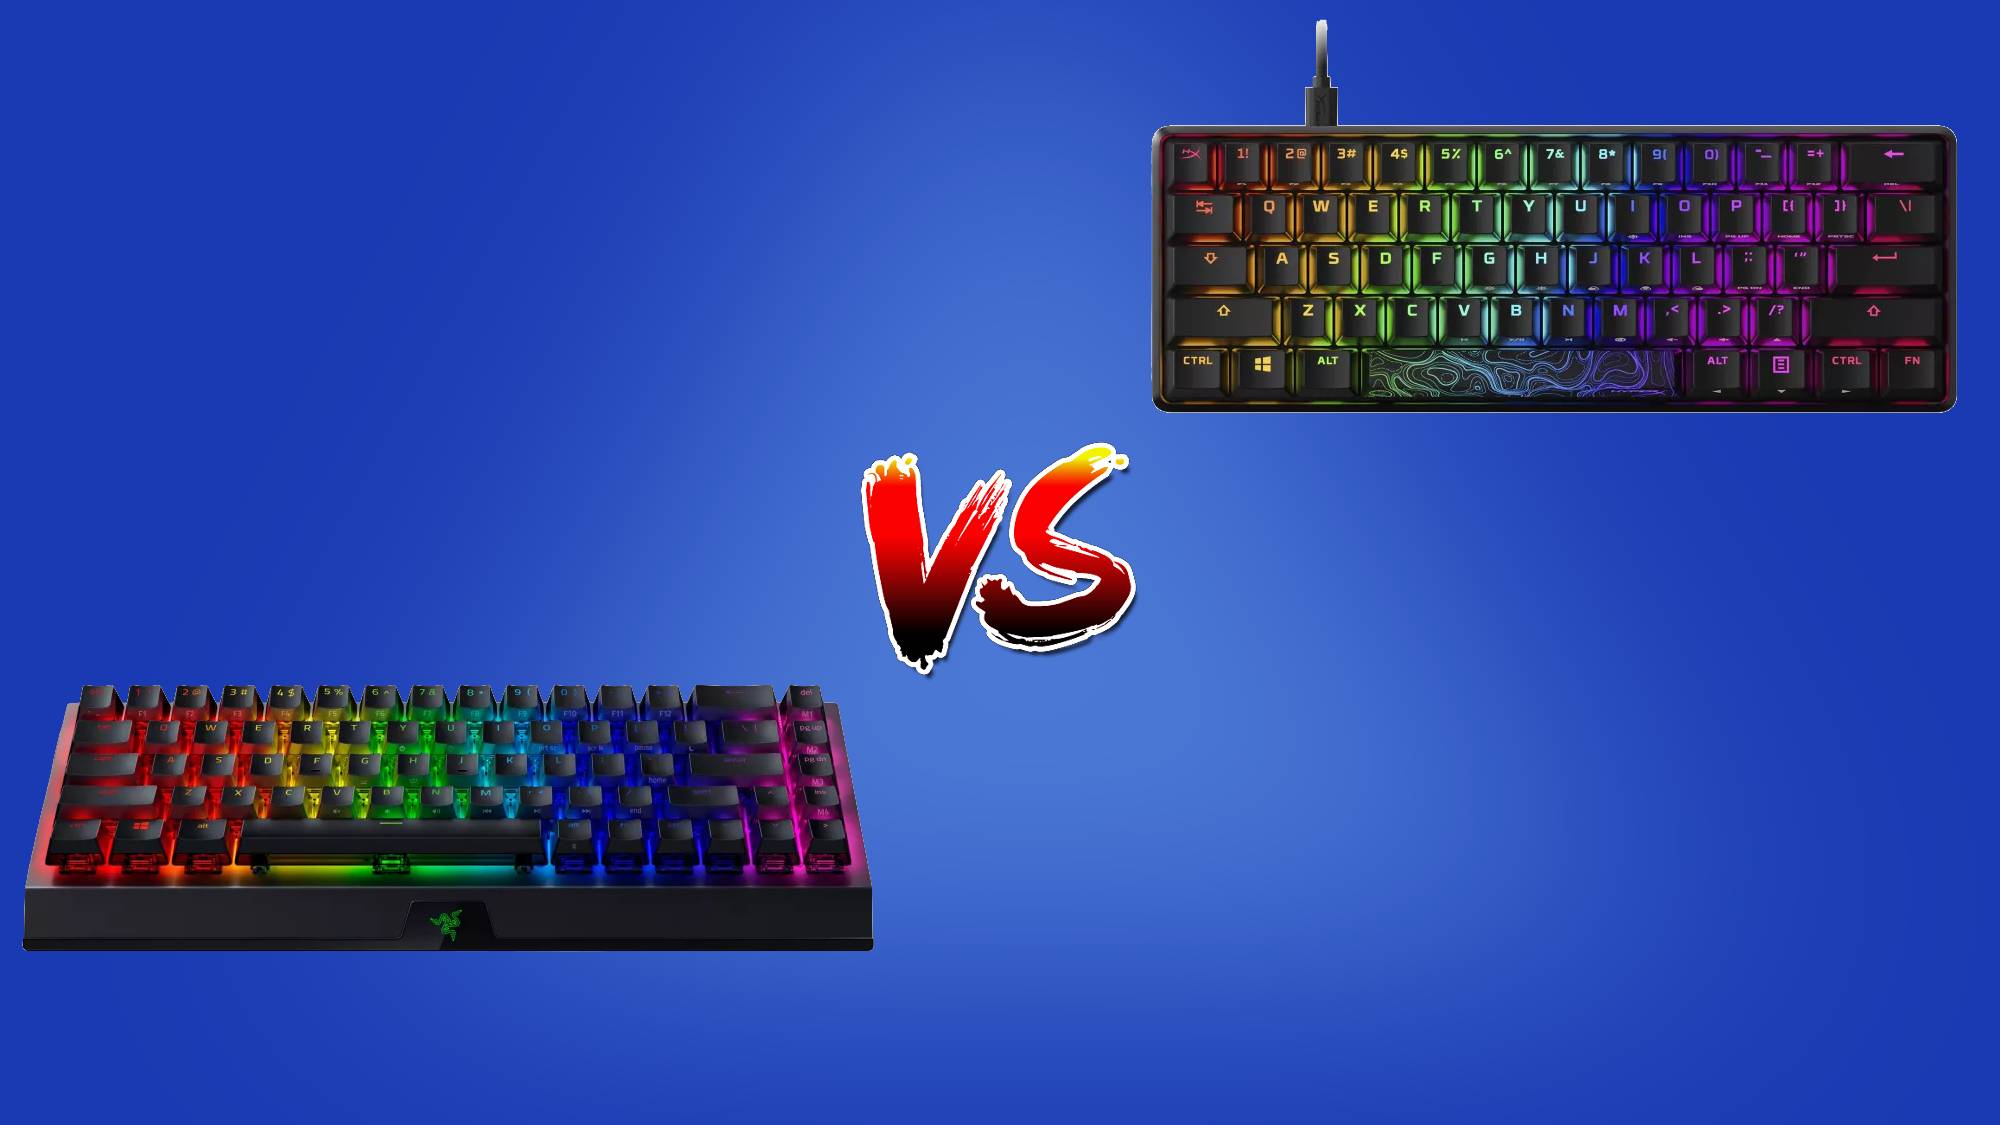 Bluetooth Keyboard Vs. Wireless Keyboard: Which is Best?